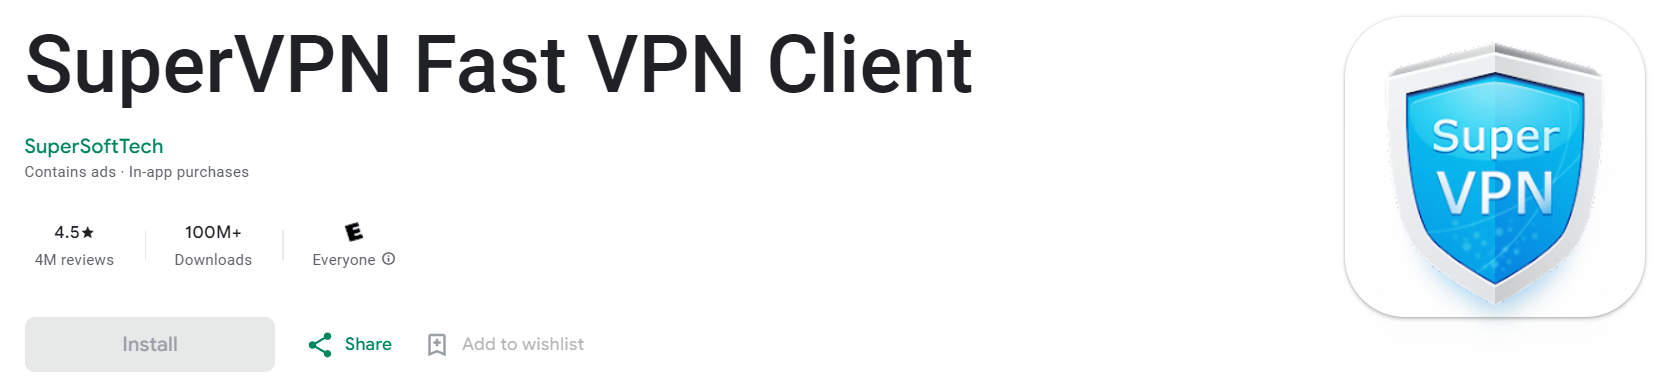 SuperVPN - Fast VPN Client